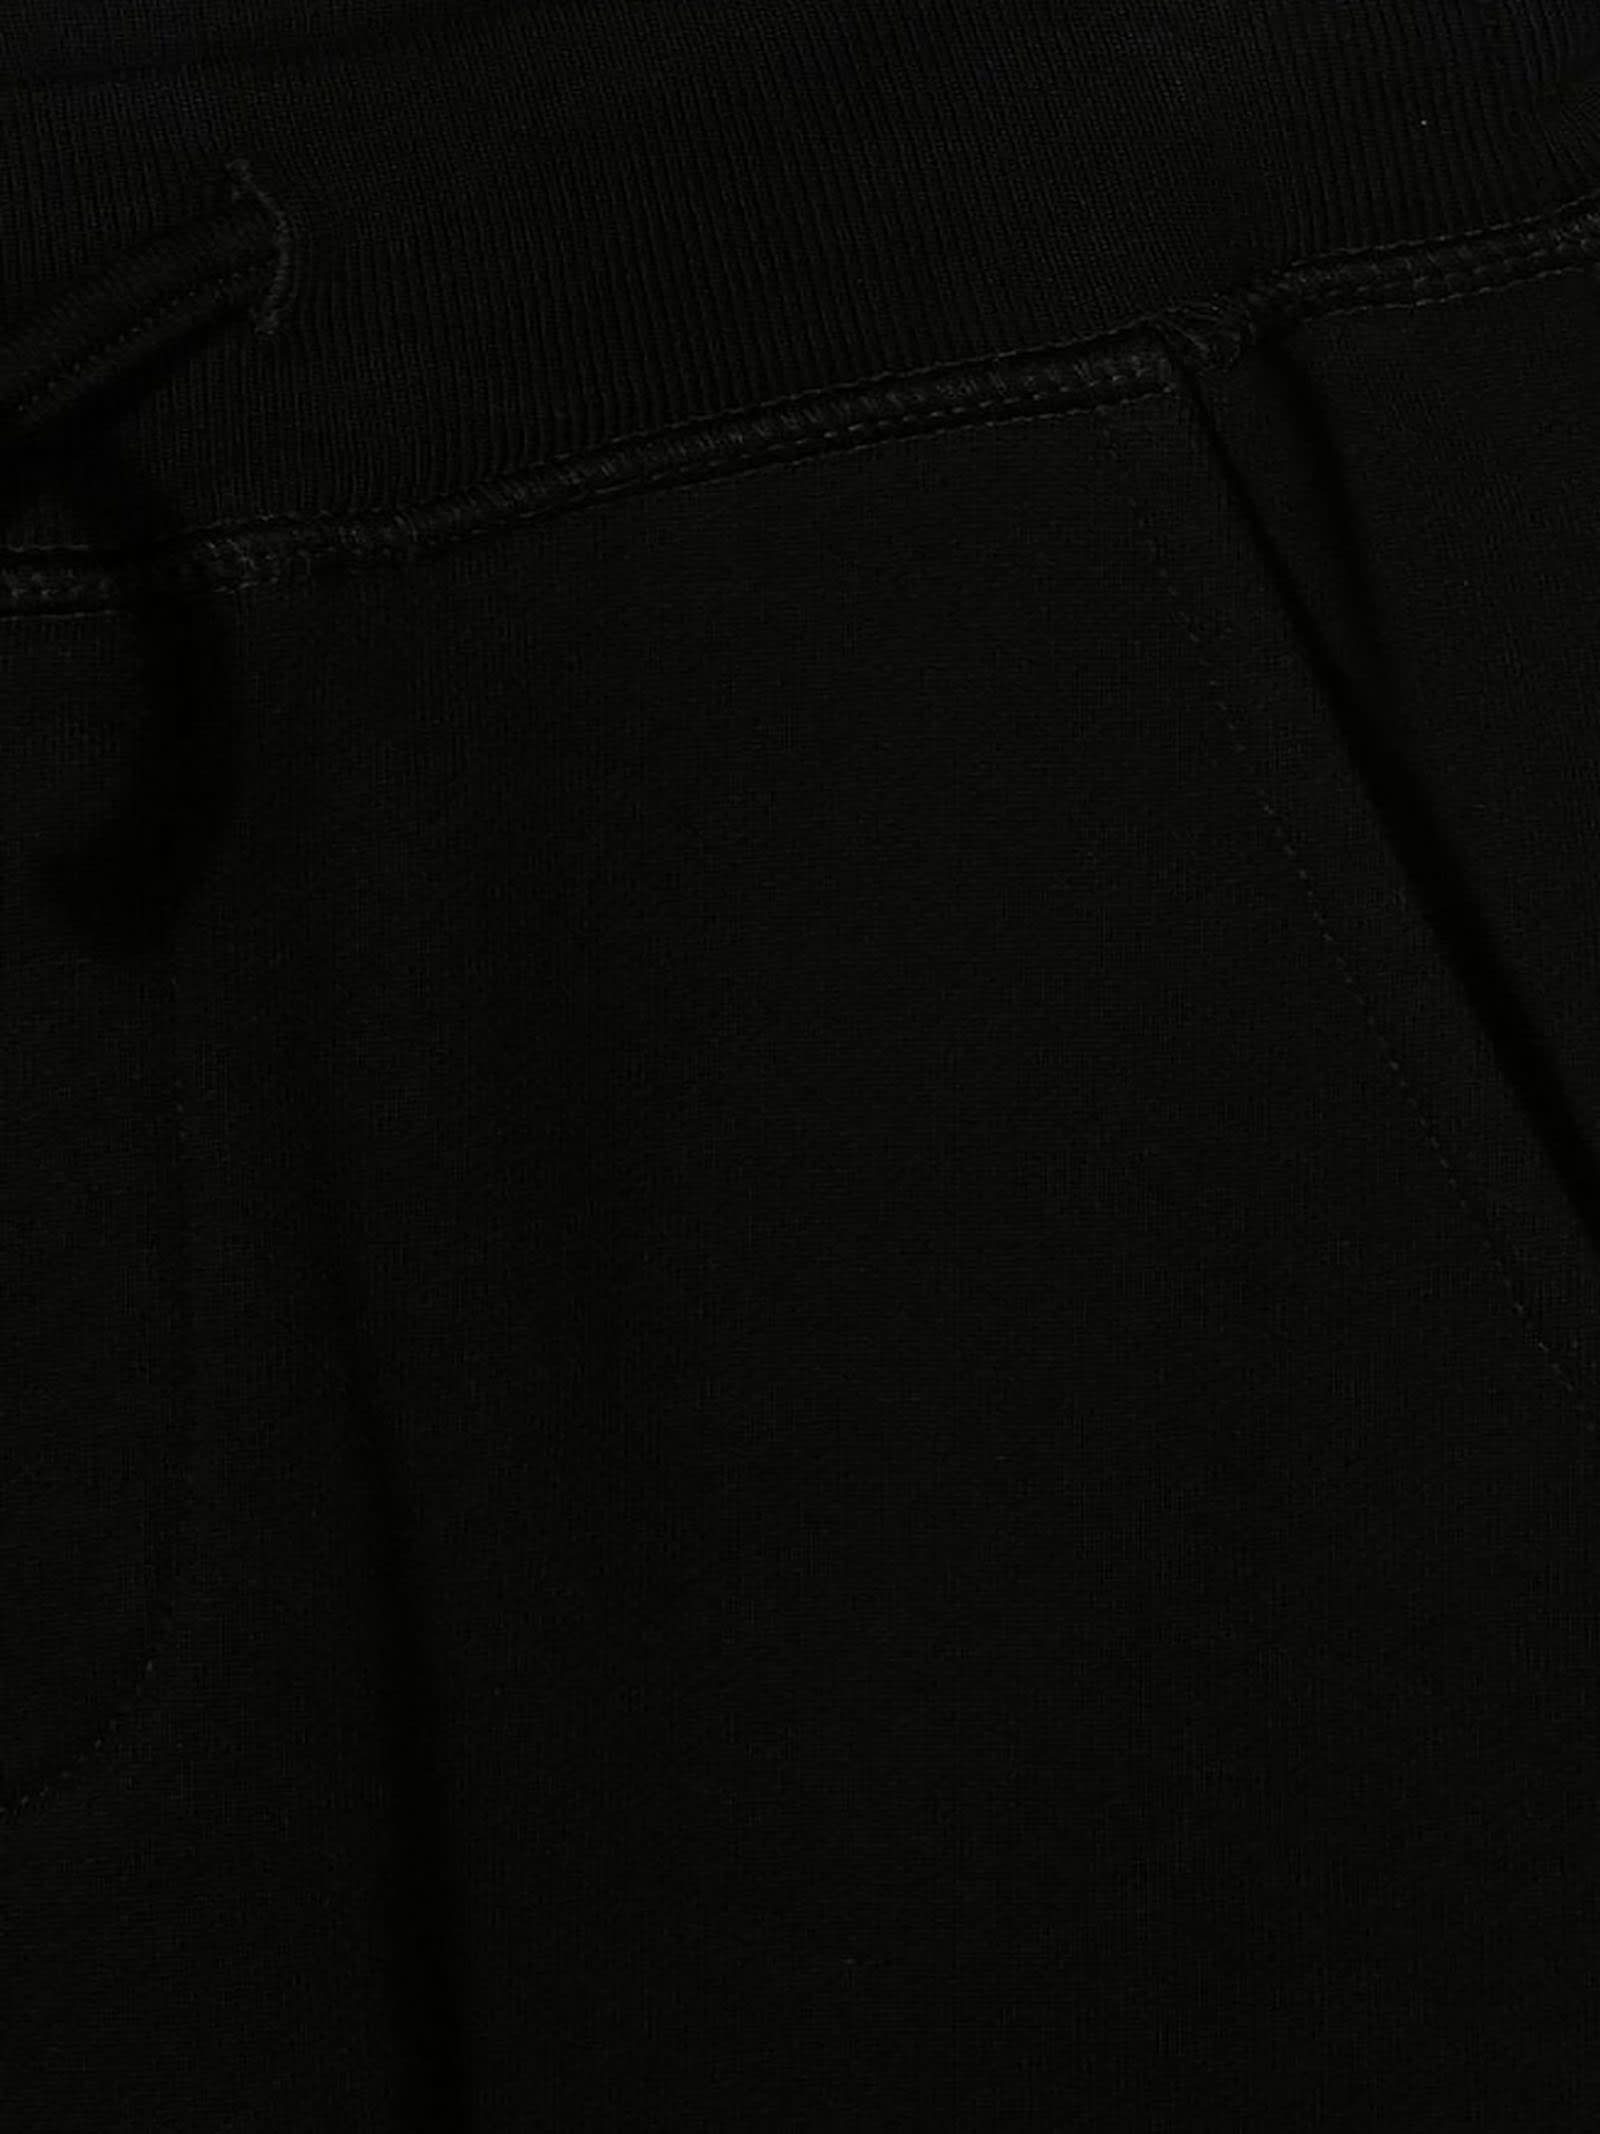 Shop Dsquared2 Trousers Black